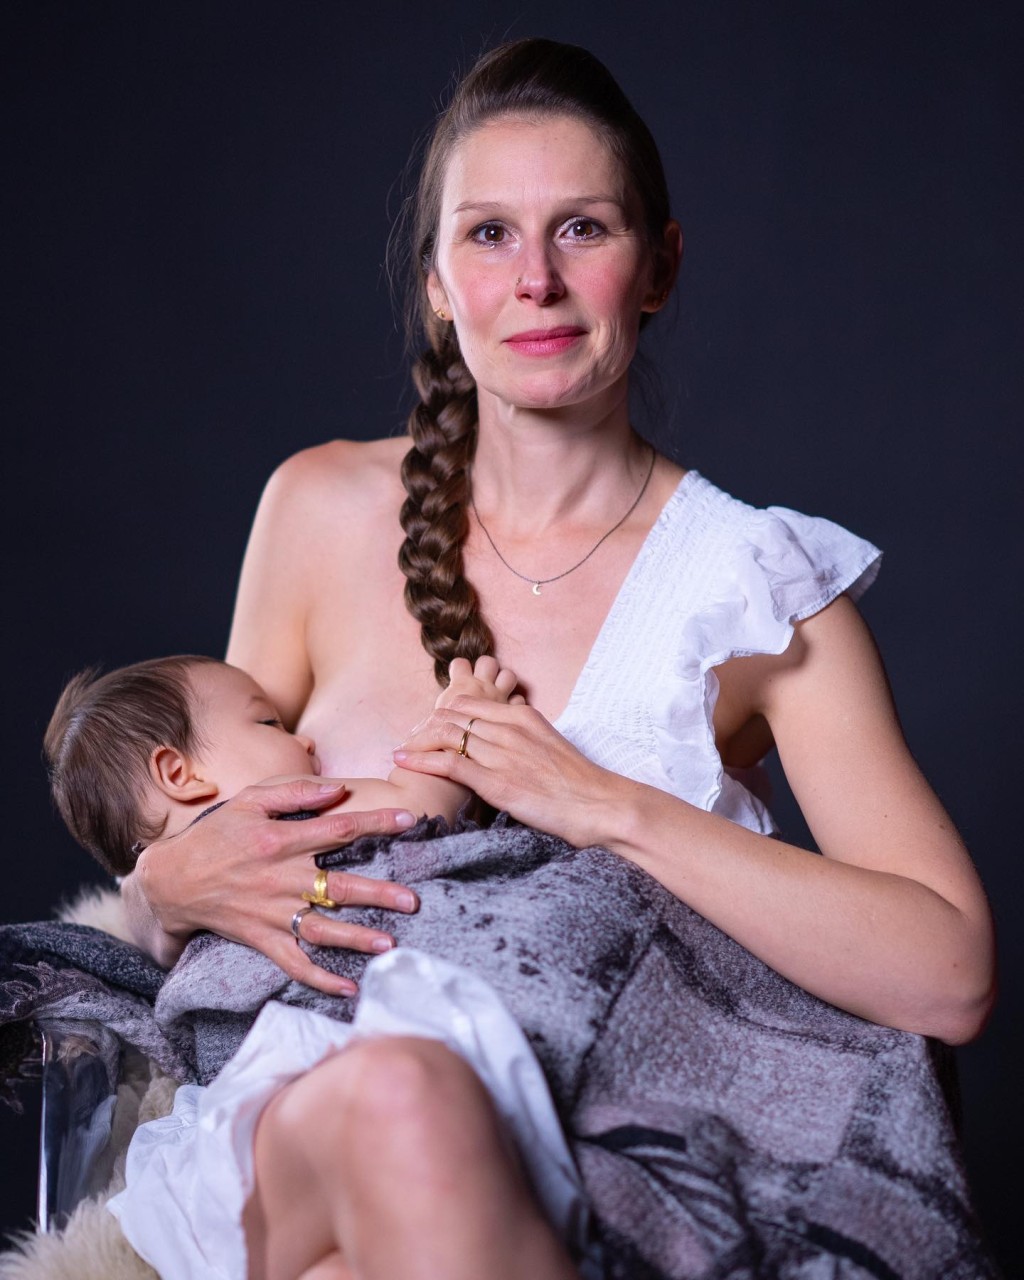 原和玉年初在IG分享多張太太Andrea餵哺母乳的照片。